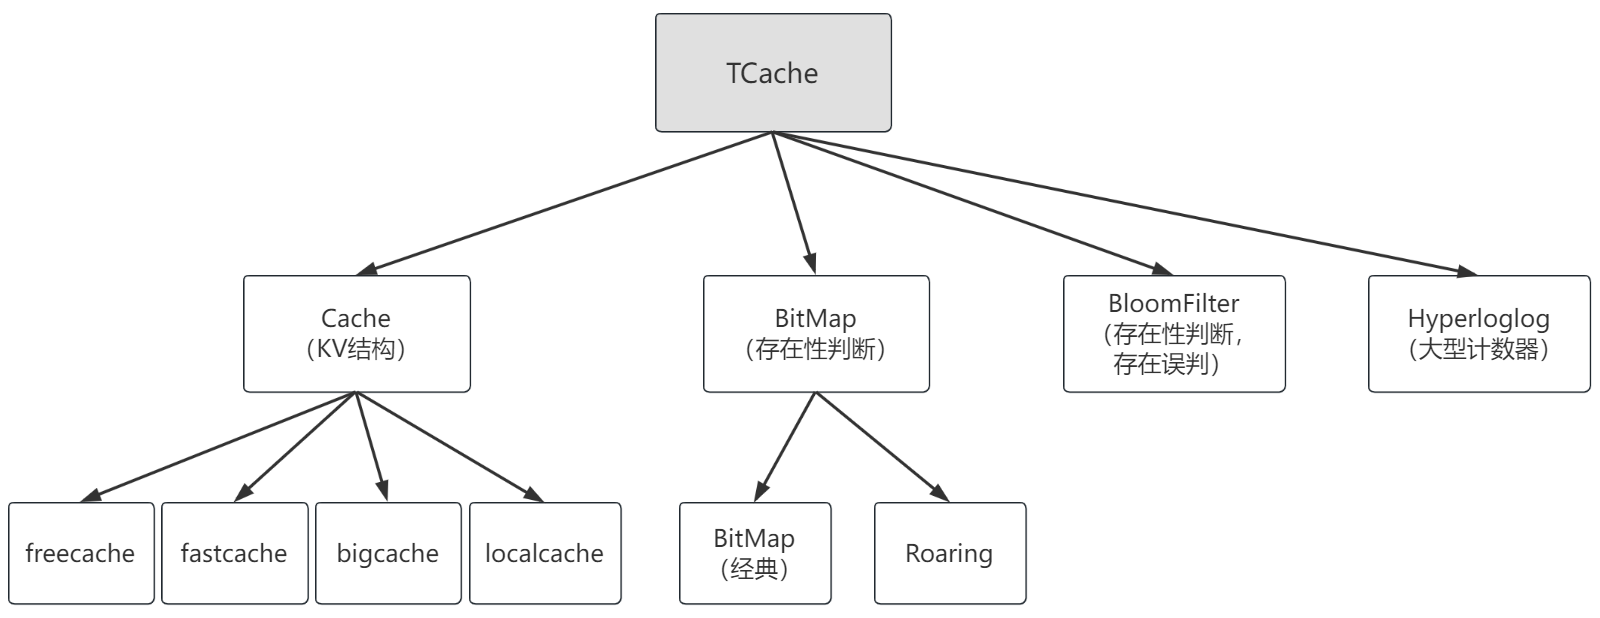 TCache 组件图